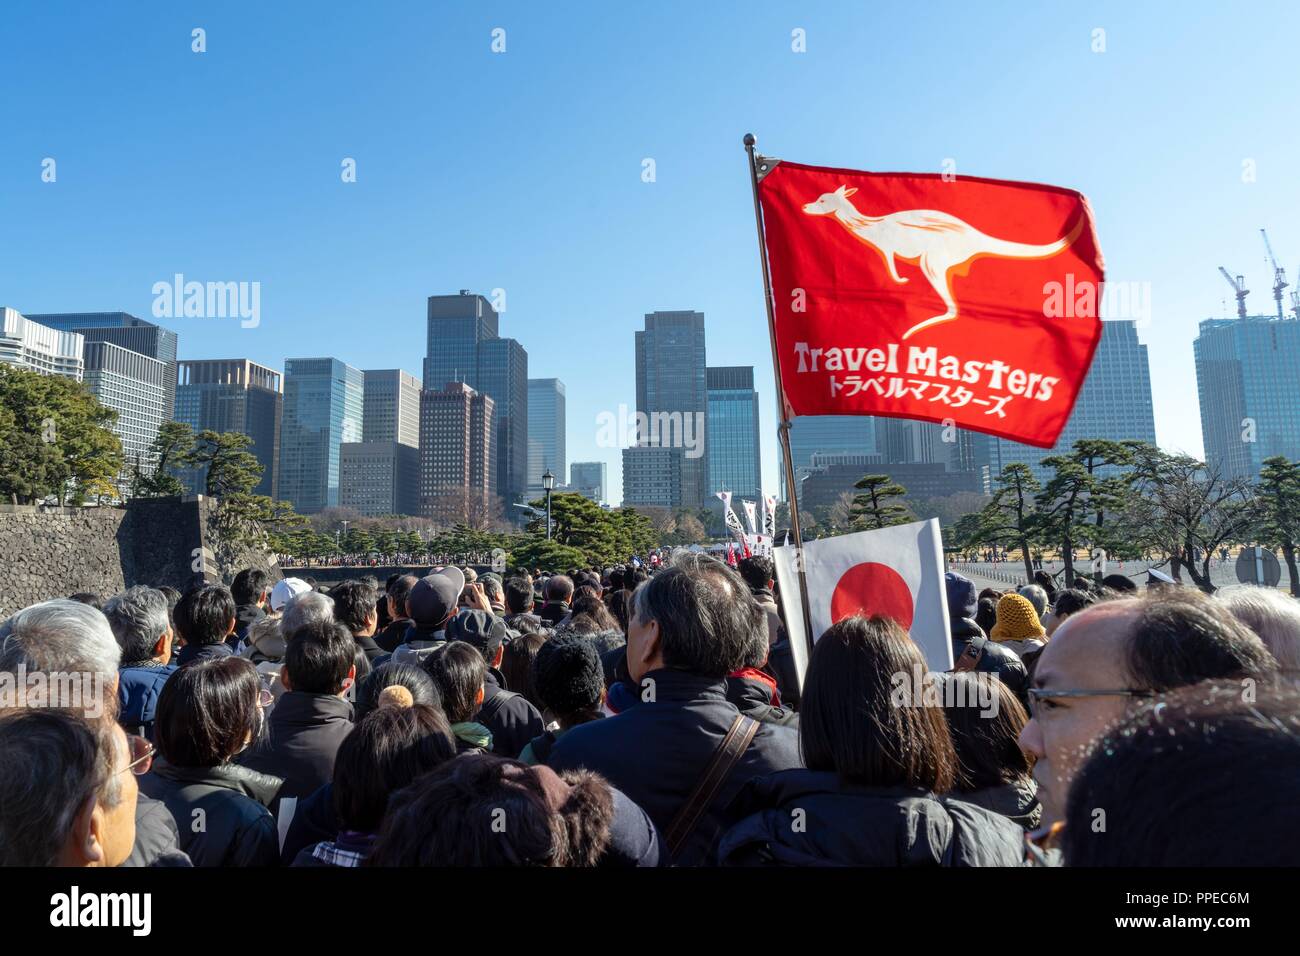 Japan: Massen aleave der Tokyo Imperial Palace, nach dem letzten Geburtstag Rede des japanischen Kaisers Akihito. Foto vom 23. Dezember 2017. | Verwendung weltweit Stockfoto